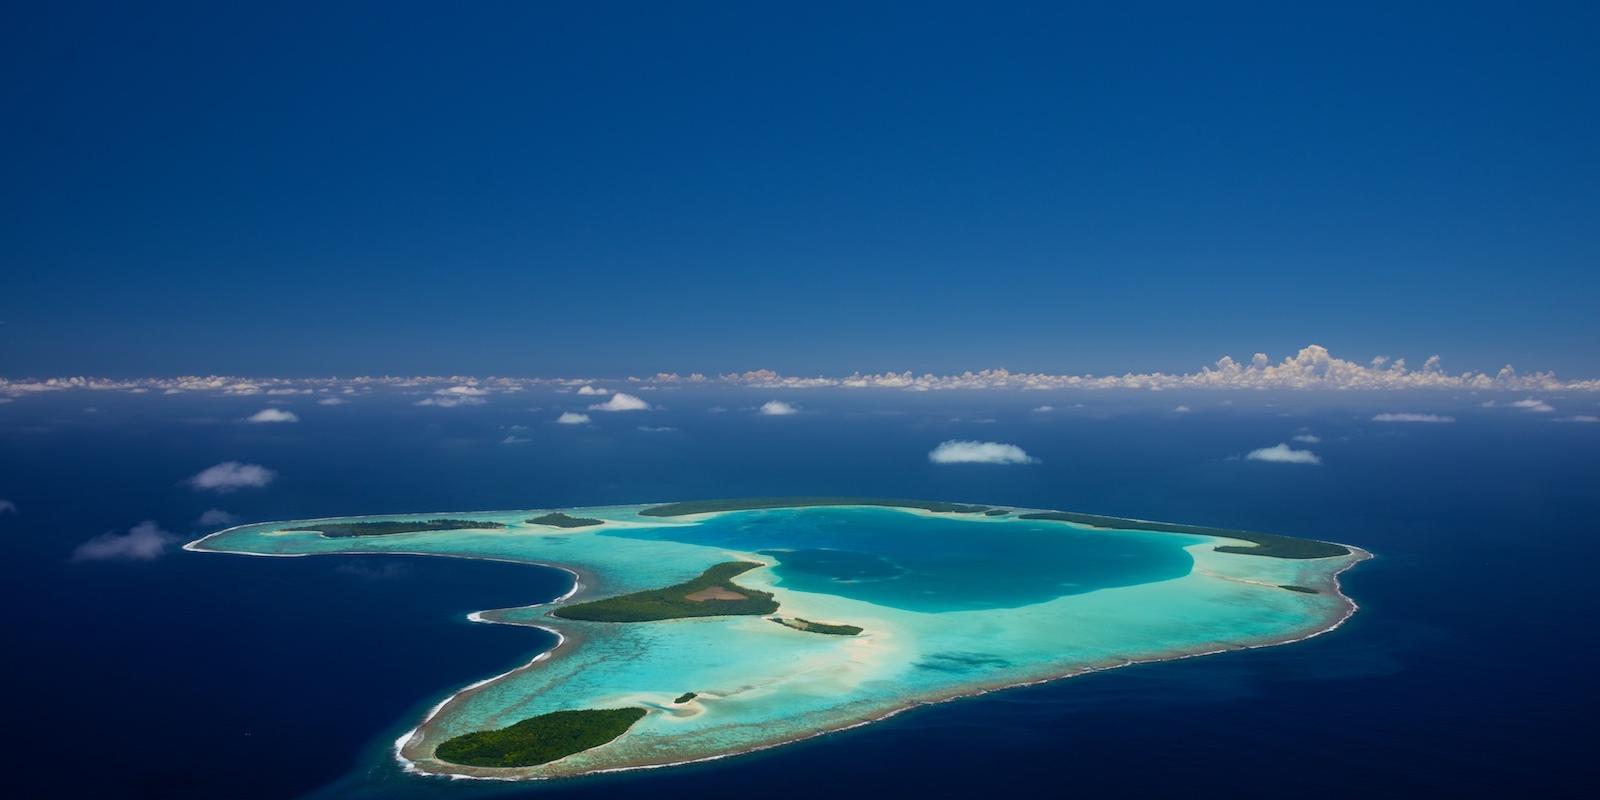 tetiaroa atoll